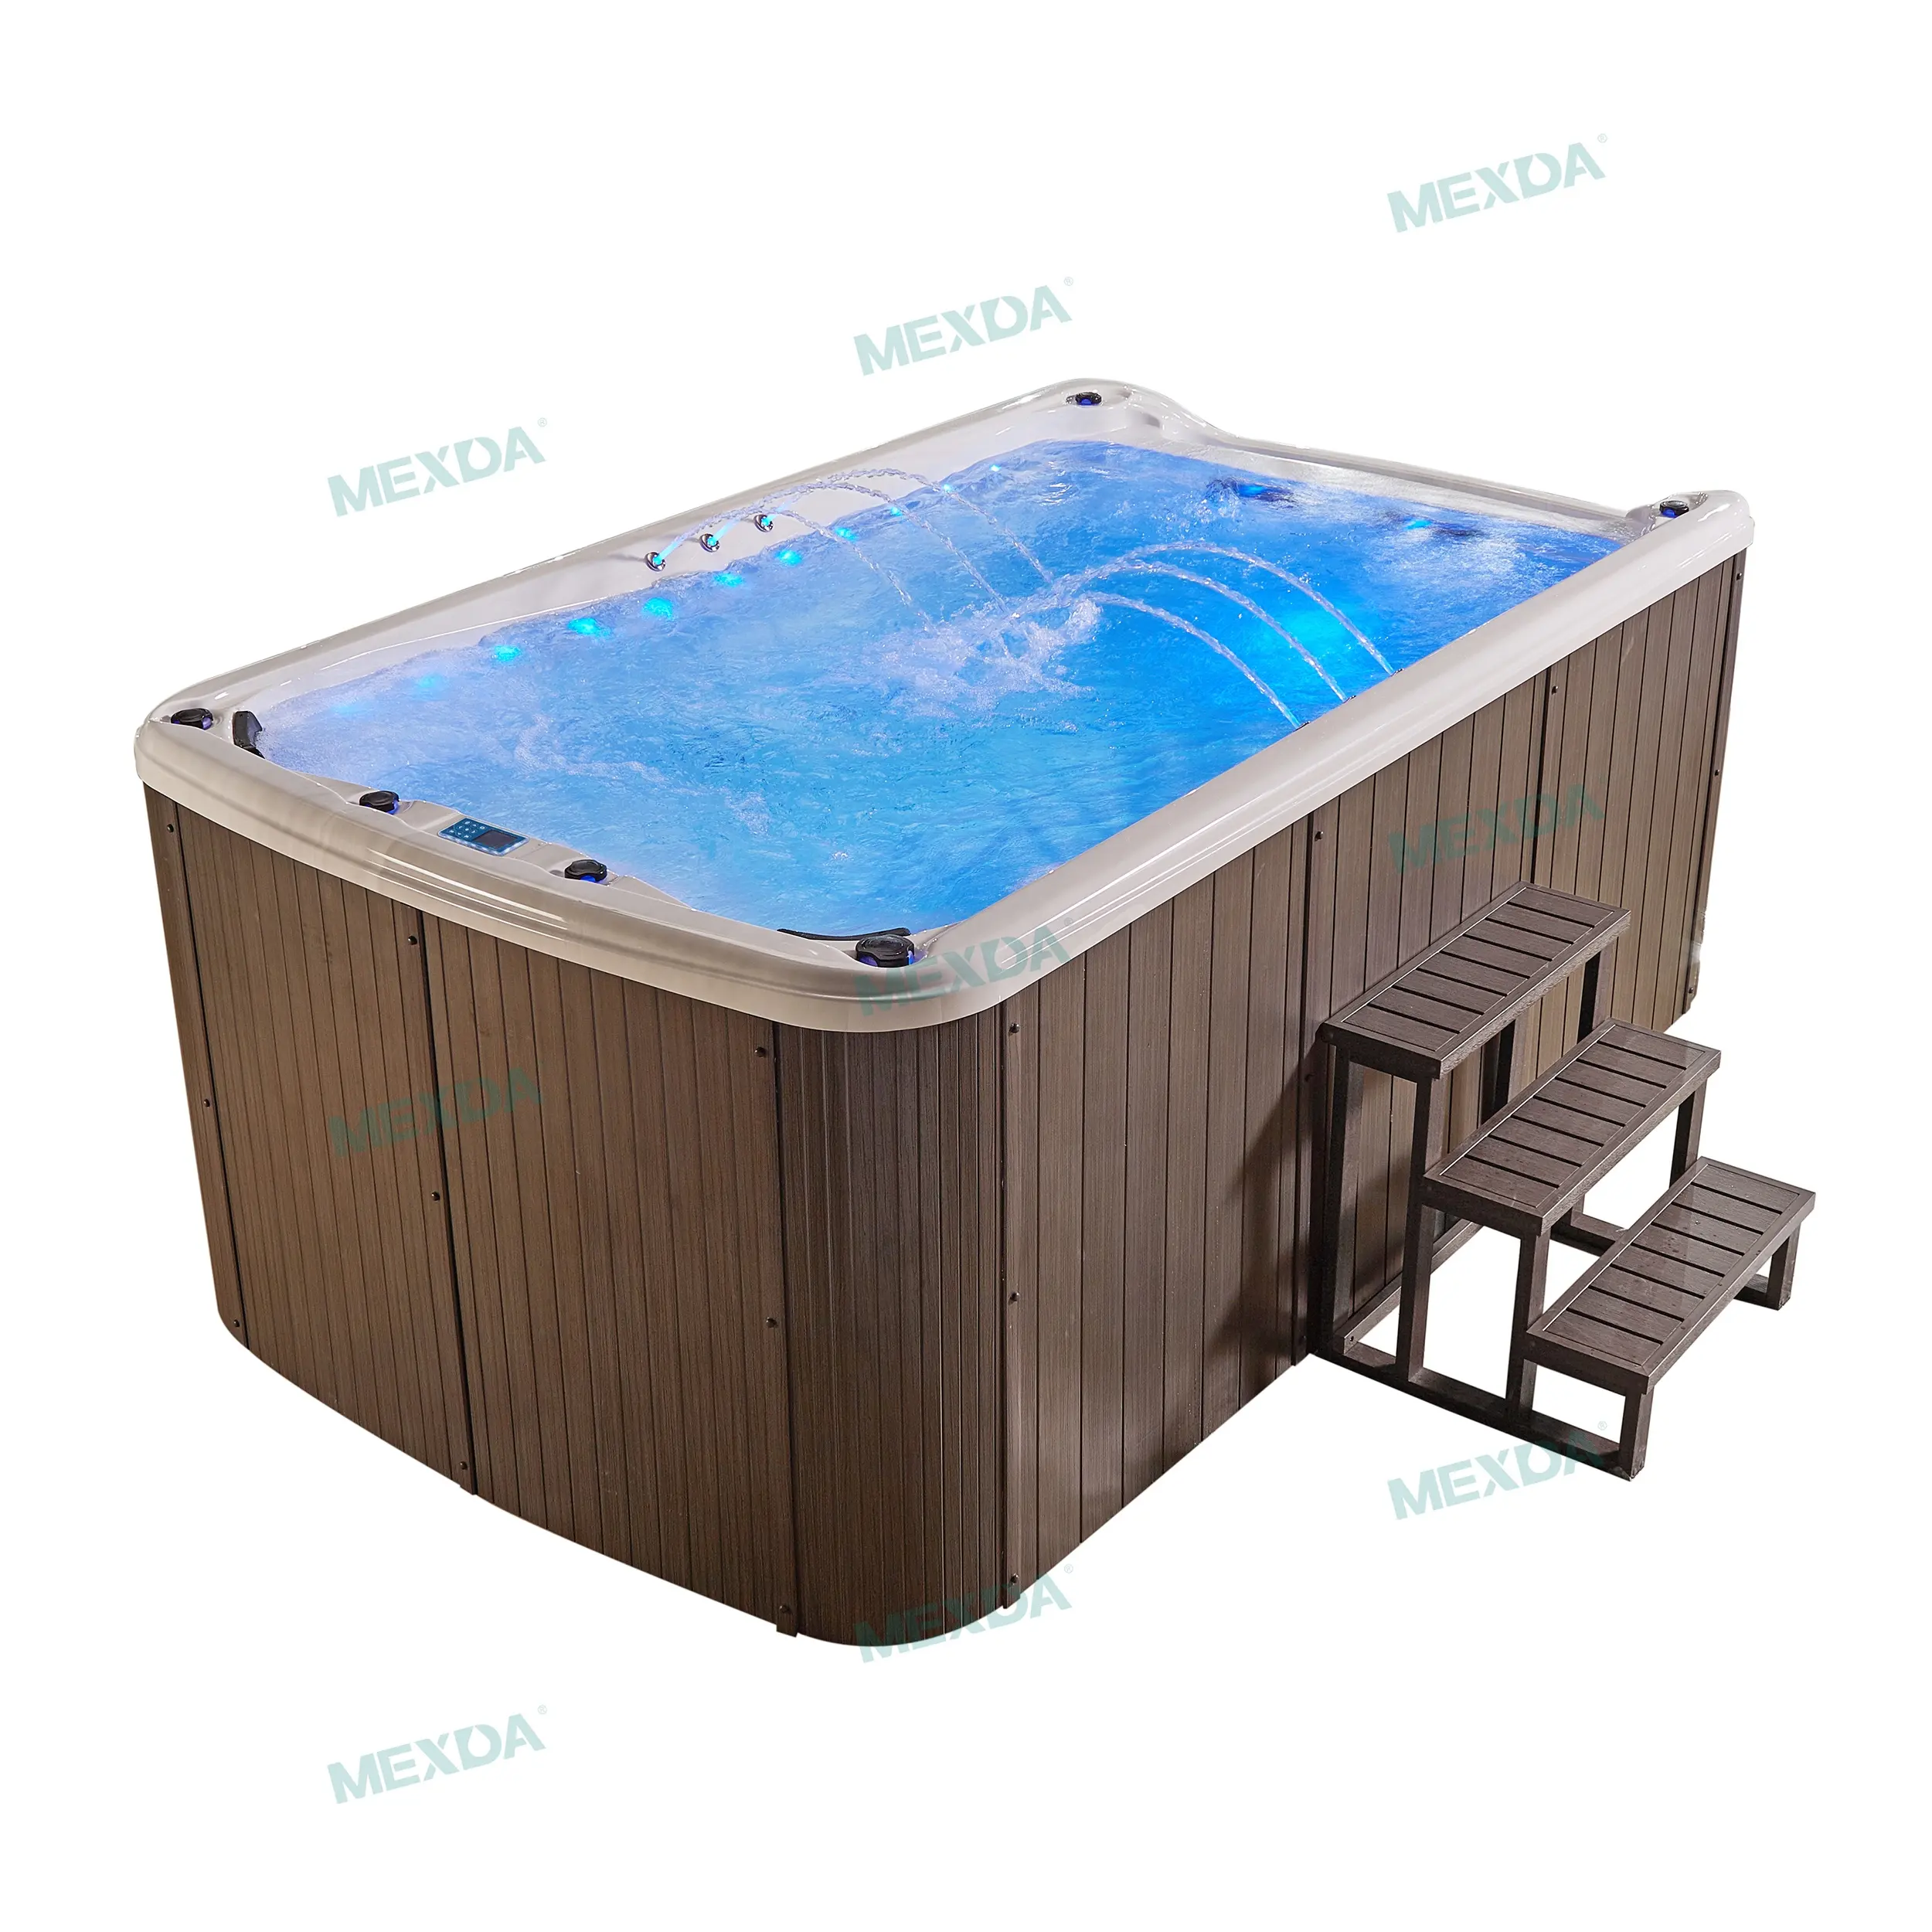 MEXDA-Piscina acrílica sobre el suelo de 4 metros, bañera de hidromasaje, para interior y exterior, WS-S04B de natación